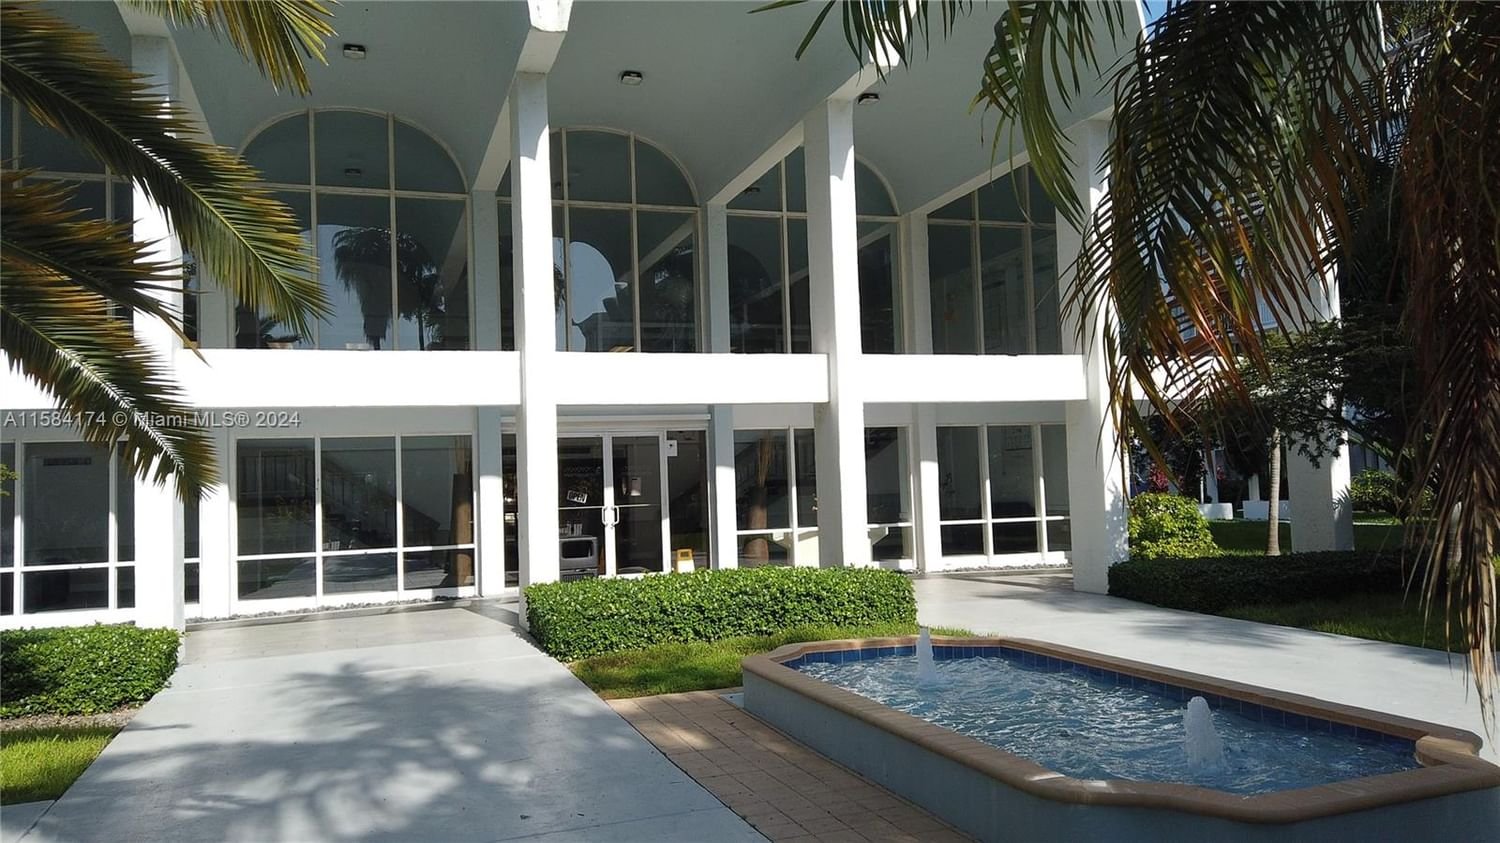 Real estate property located at 498 165th Street Rd D301, Miami-Dade County, MONTECARLO CONDO, Miami, FL